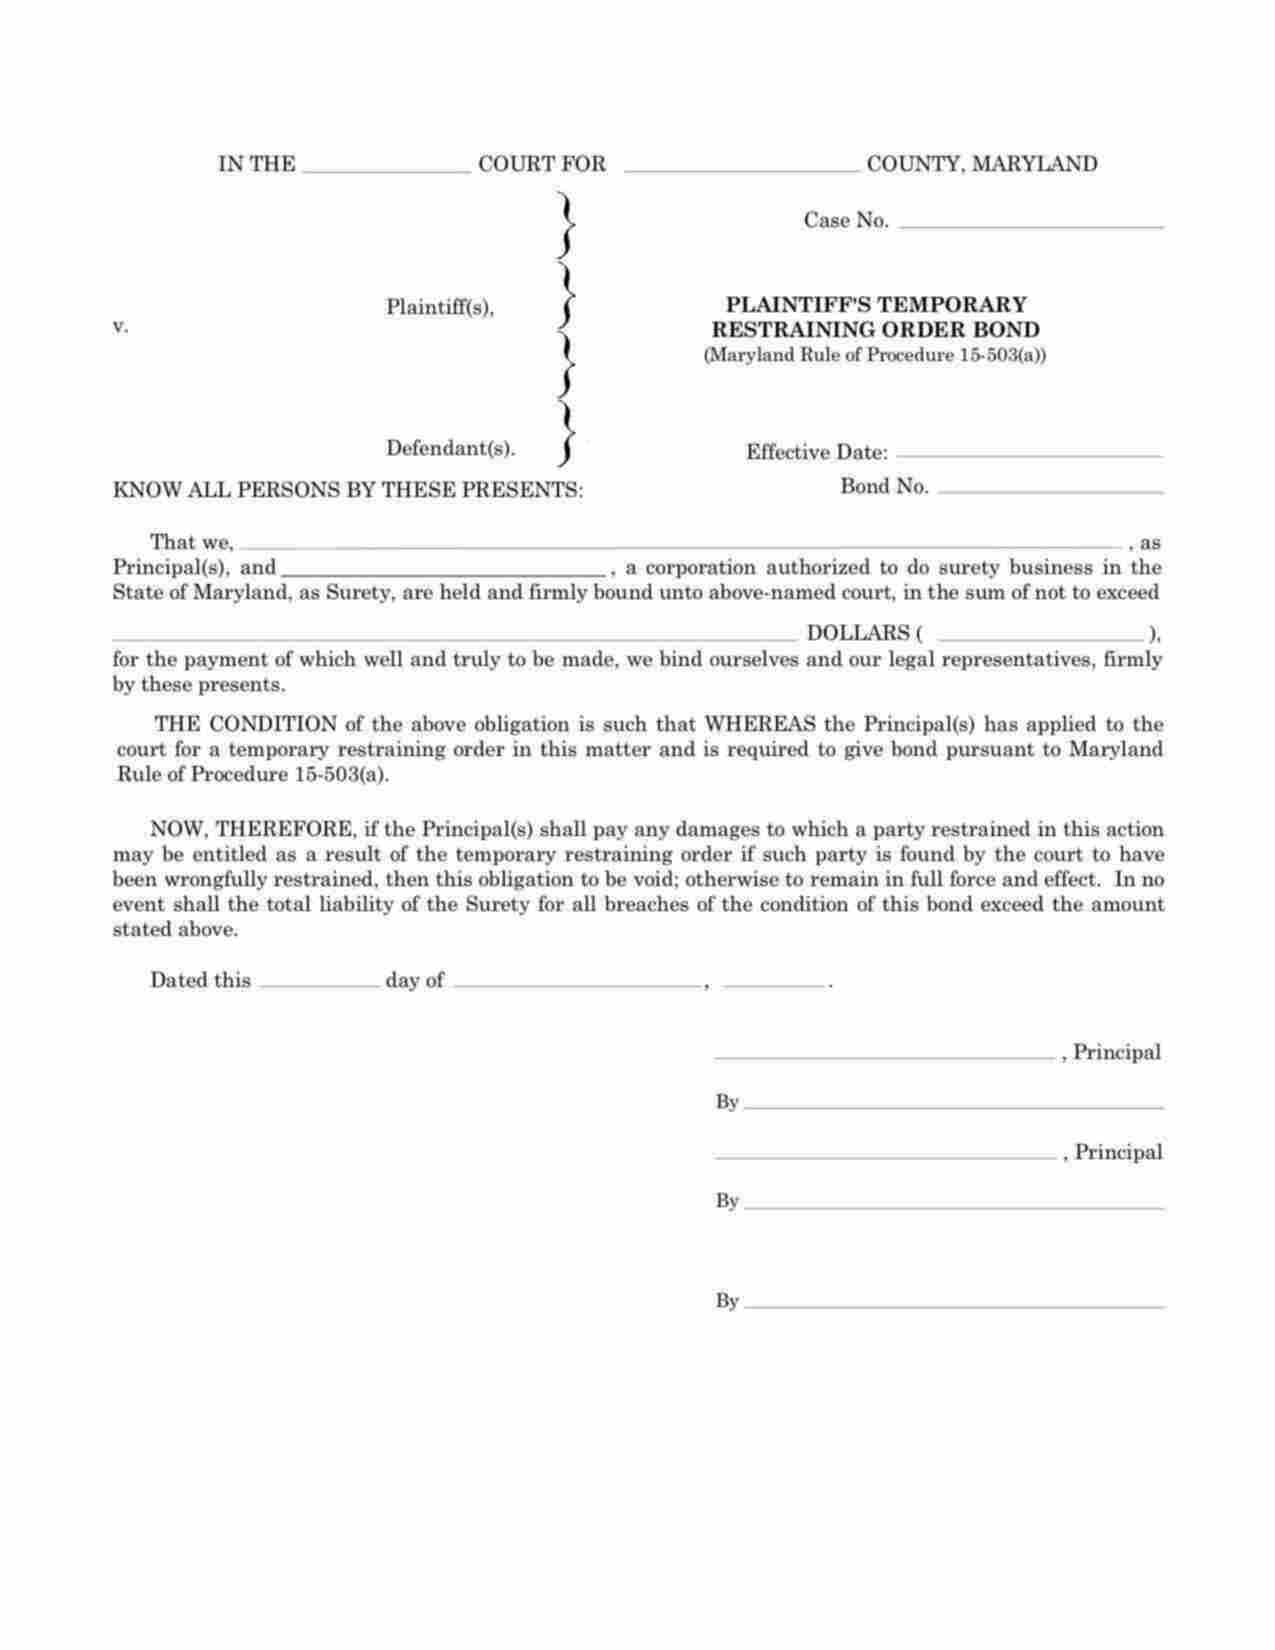 Maryland Plaintiffs Temporary Restraining Order Bond Form